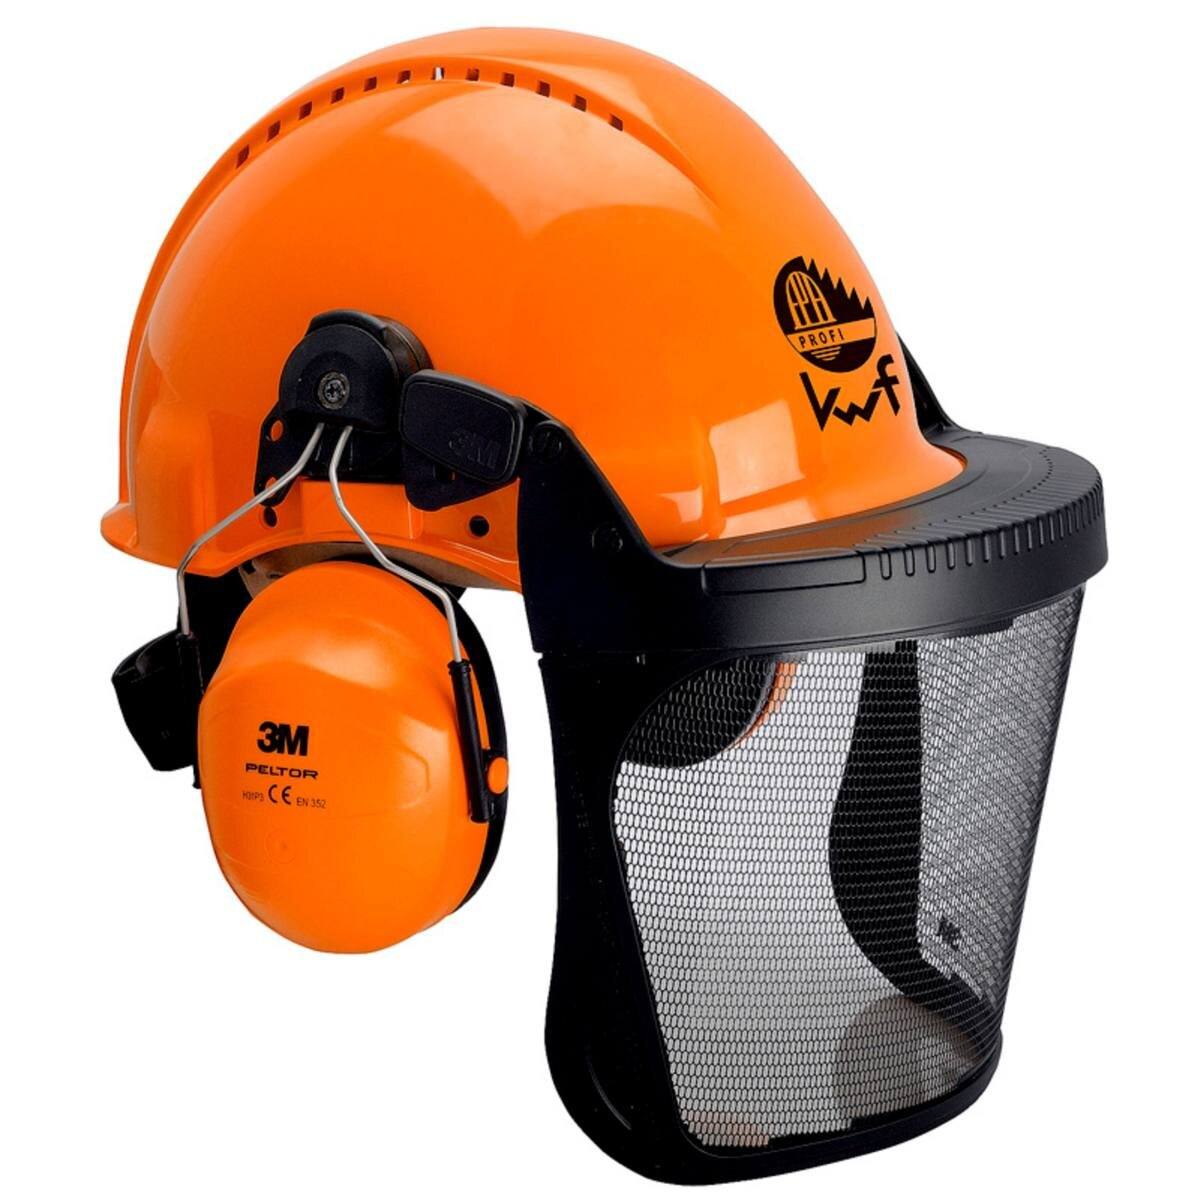 Combinación de protección para la cabeza 3M G3000 3MO315J en naranja con cápsulas H31P3E, sistema de trinquete, visera 5J de metal grabado, banda de sudoración de cuero, logotipo KWF